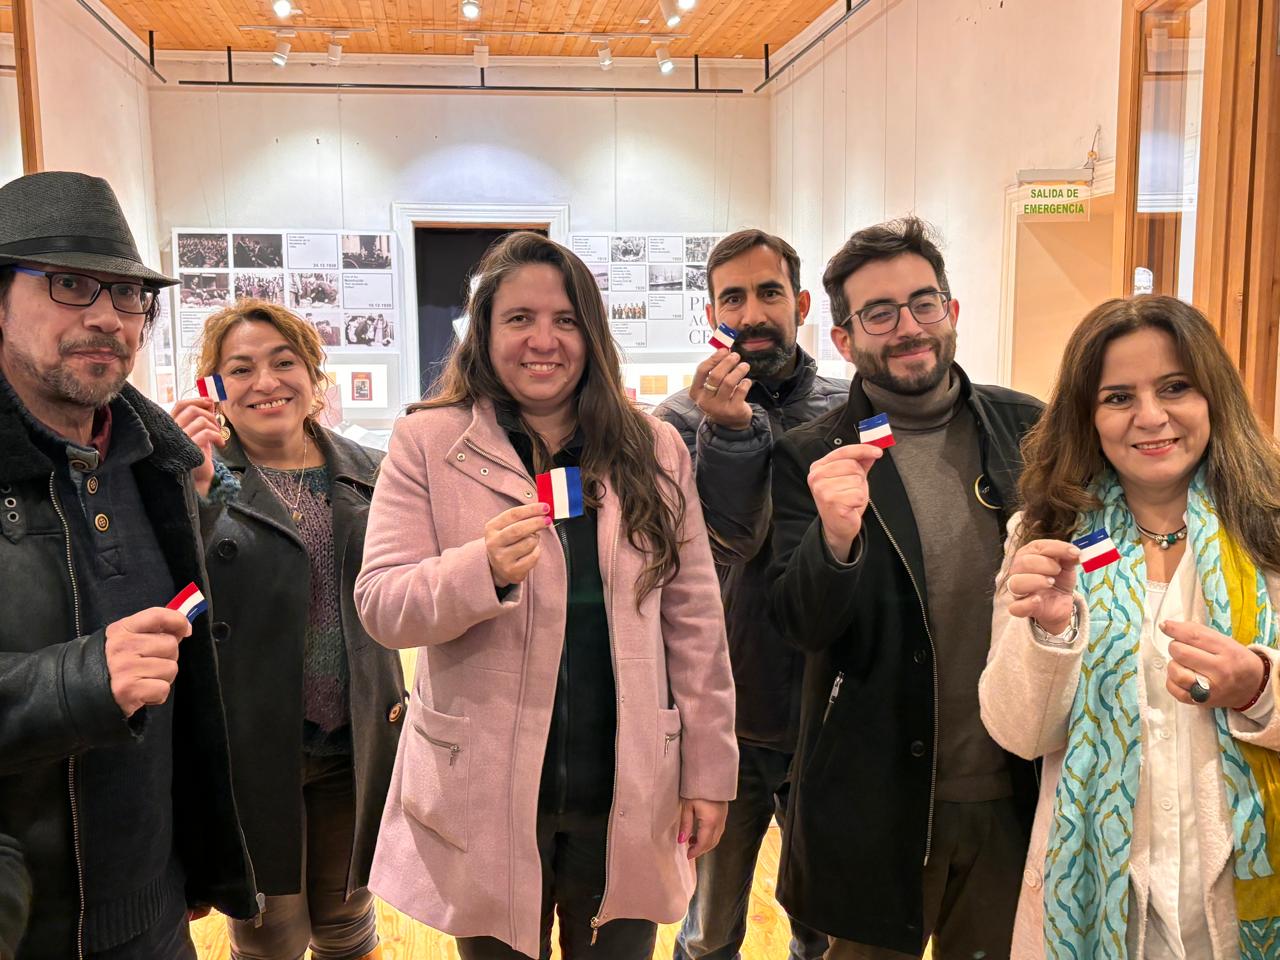 CALLE LARGA: Museo Pedro Aguirre Cerda inauguró nueva museografía inclusiva